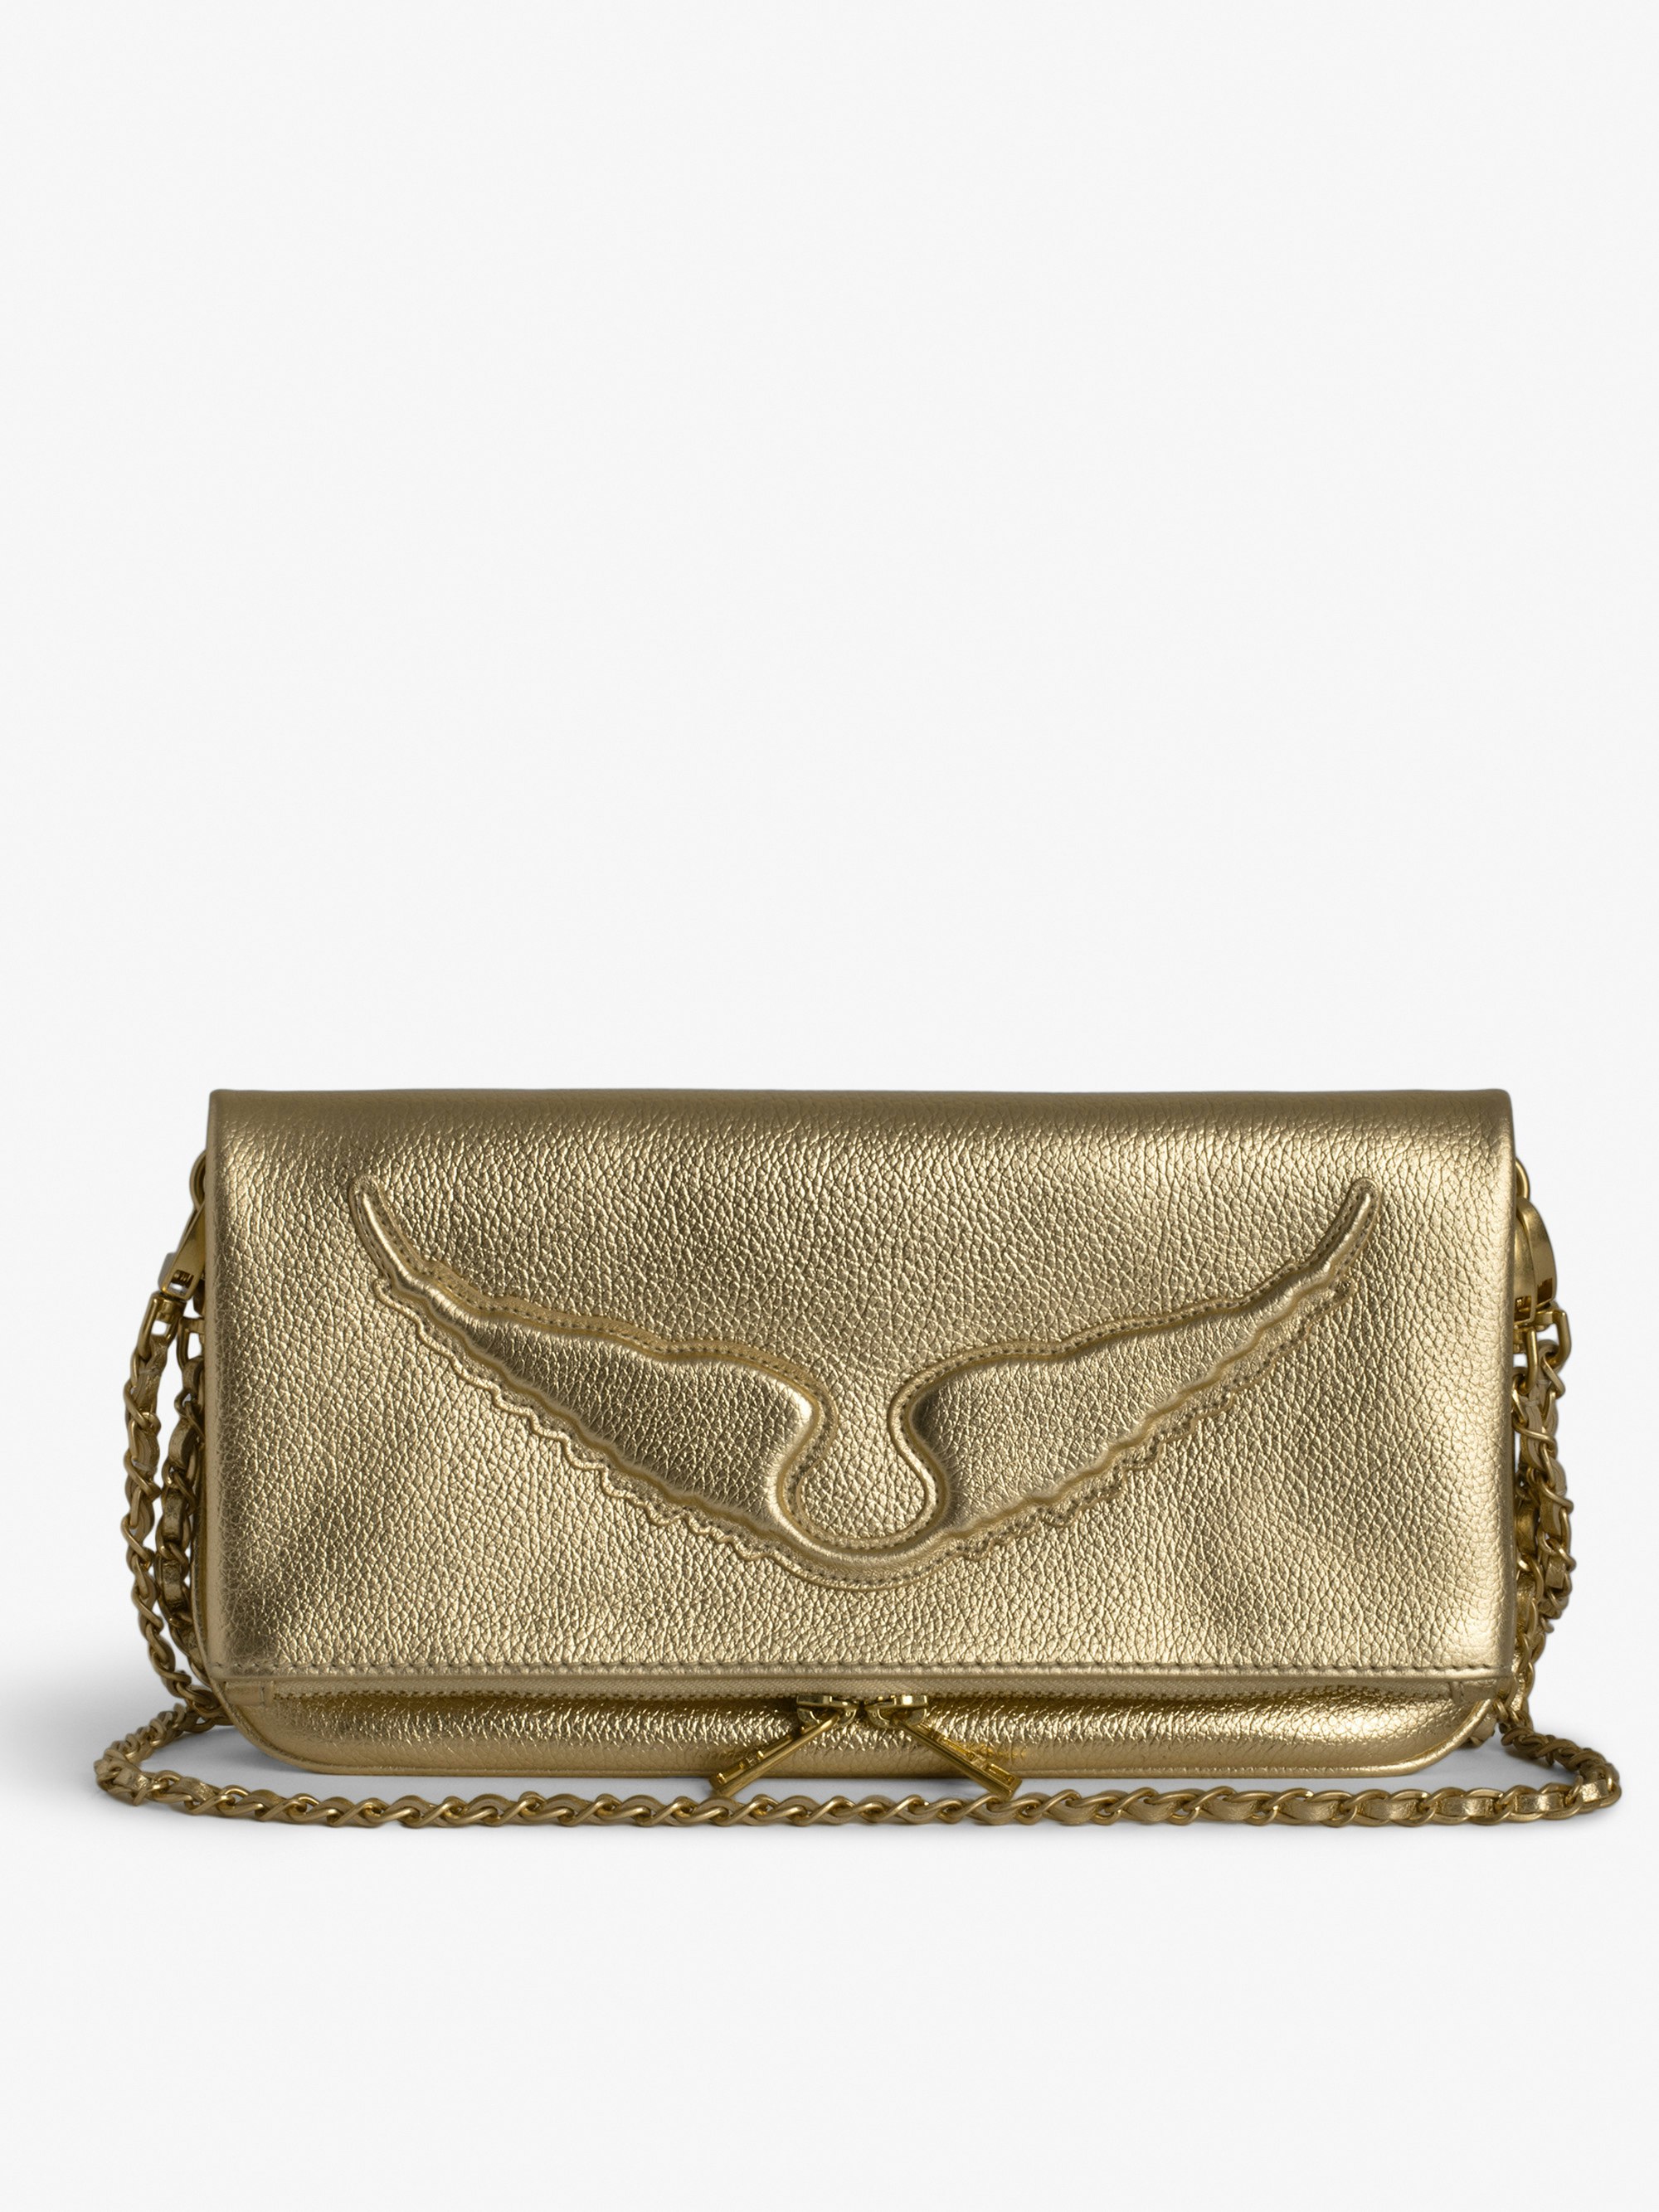 Bolso de Mano Rock - Bolso de mano de piel con efecto granulado y metalizado dorado con doble cadena y las emblemáticas alas repujadas.